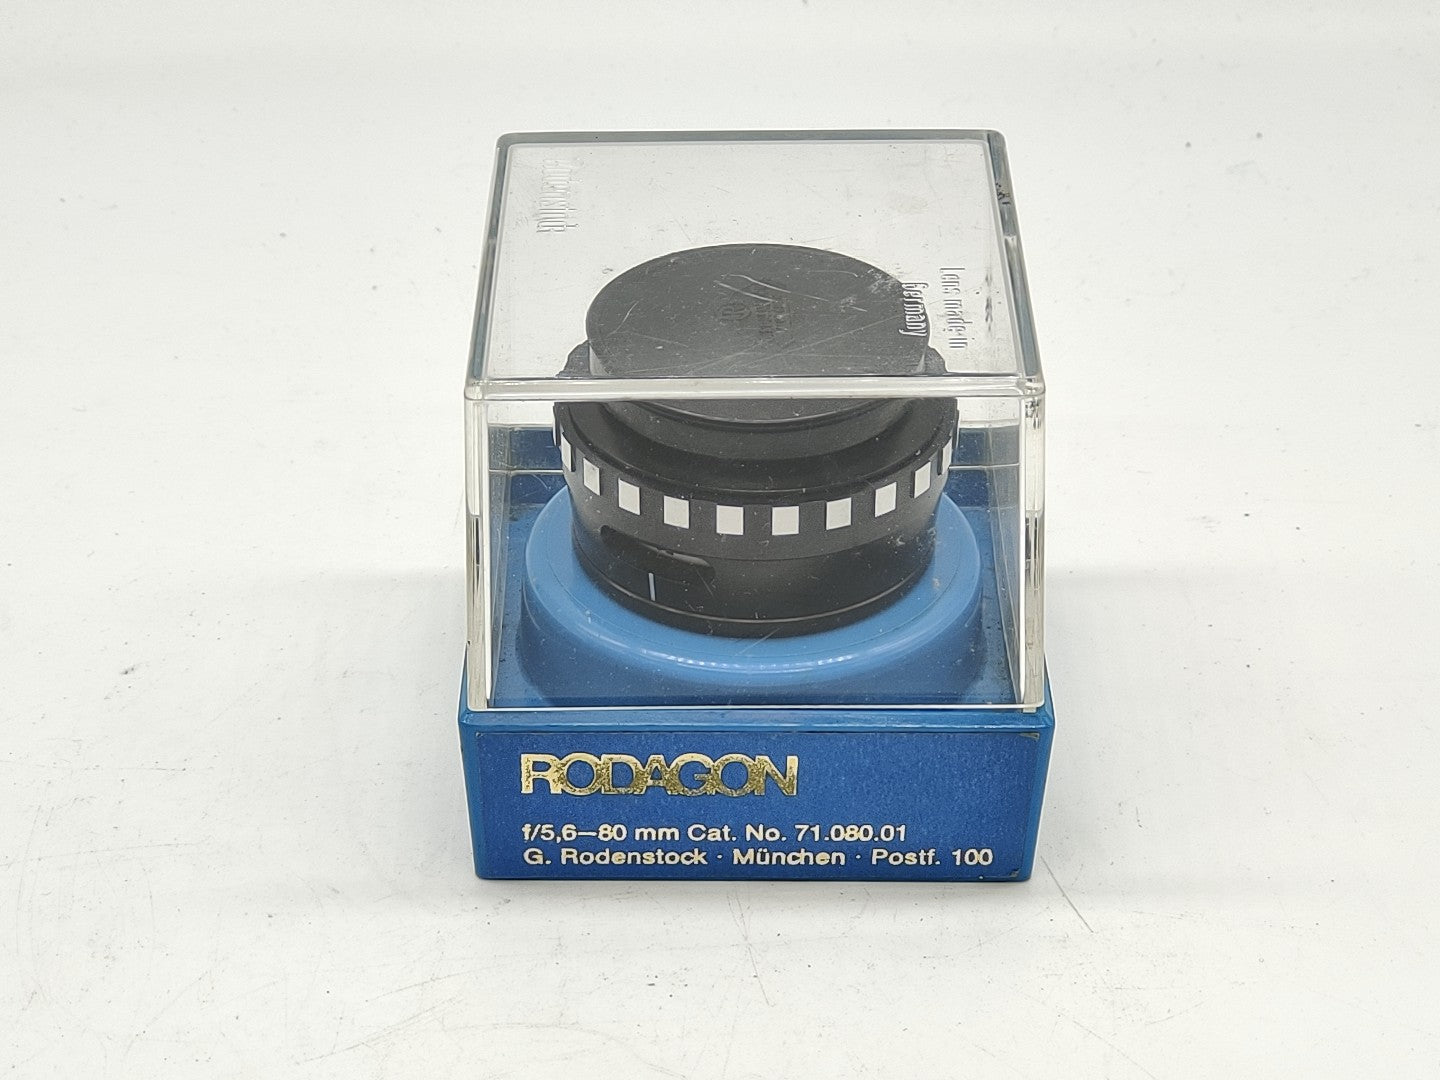 Rodenstock Rodagon 80mm f/5.6 enlarging lens